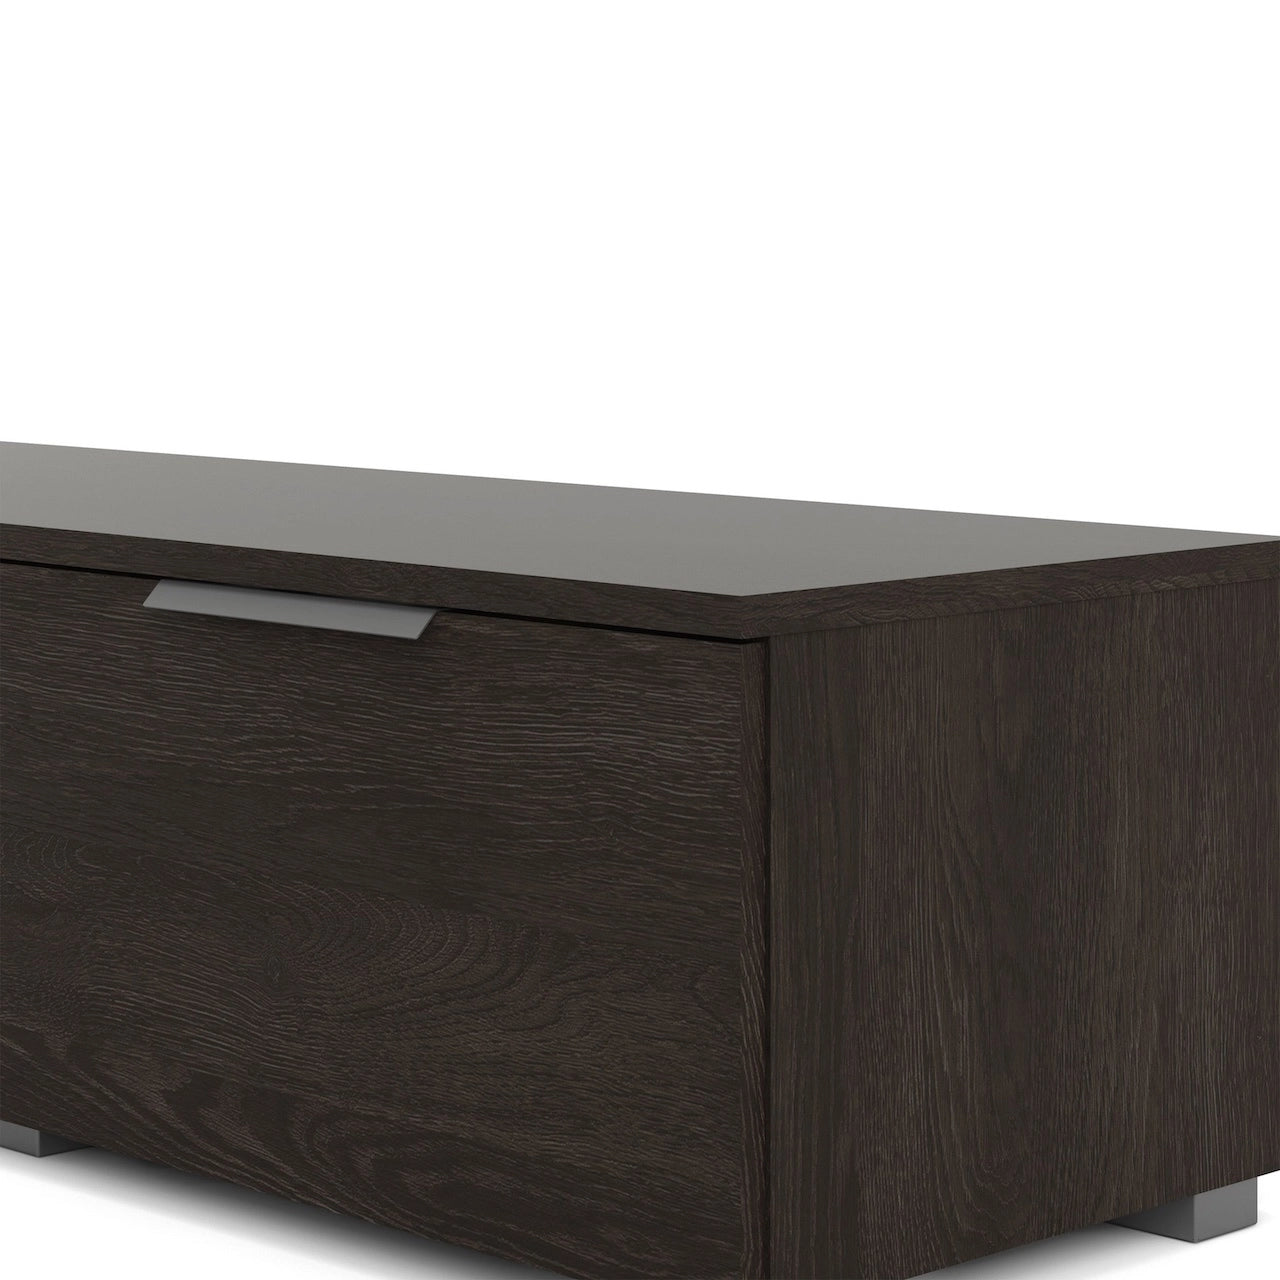 Furniture To Go Match TV Unit 2 Drawers 2 Shelf in Rovere Gessato Dark Oak